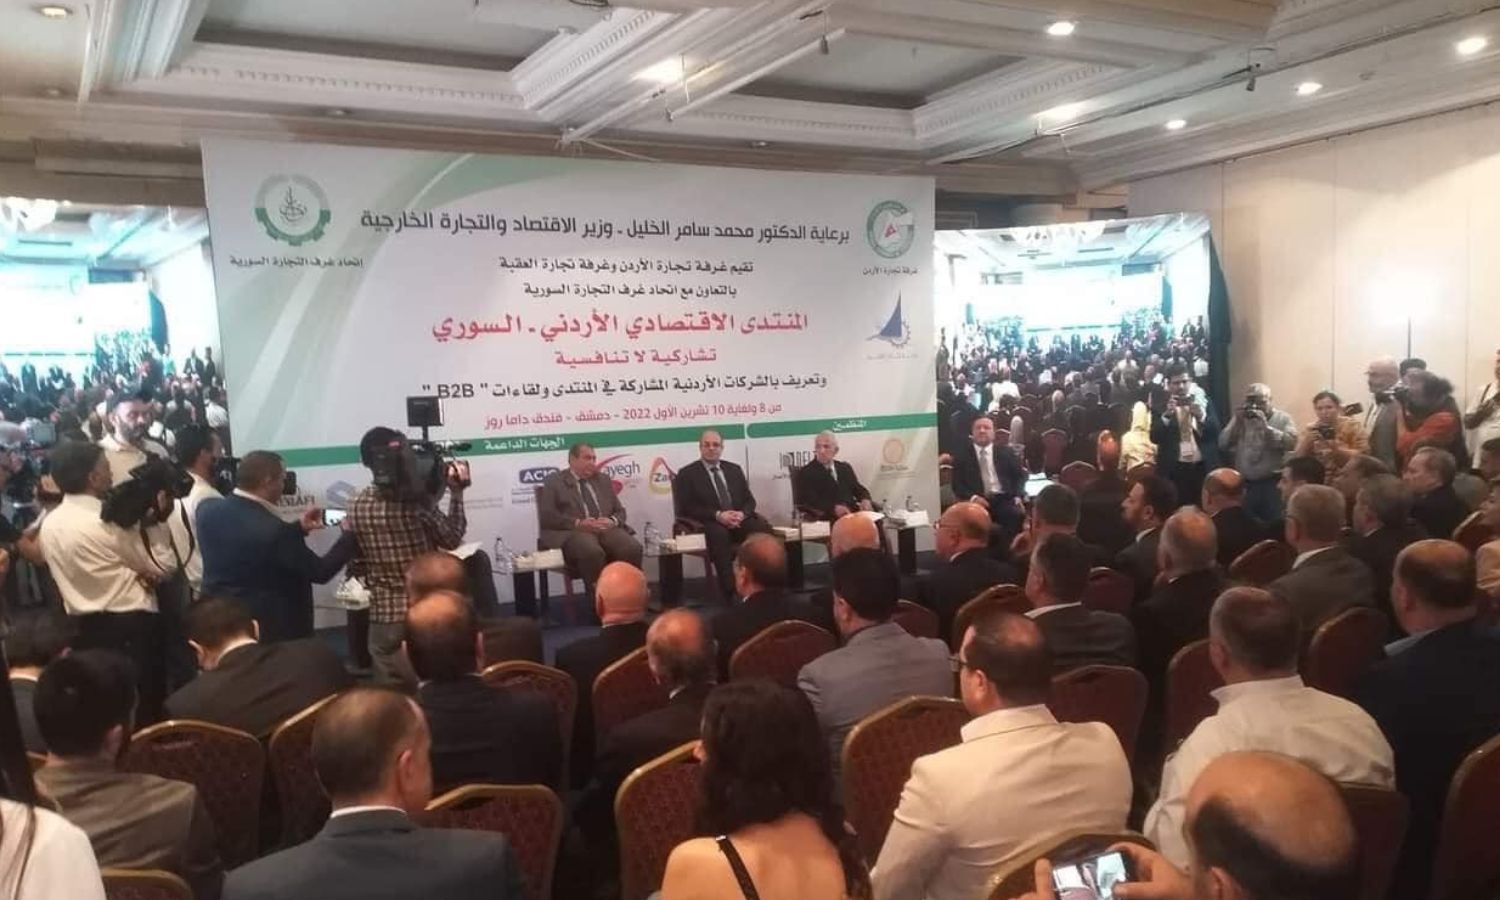 منتدى "تشاركية لا تنافسية" في دمشق في 8 من تشرين الأول 2022 (وزارة الاقتصاد)